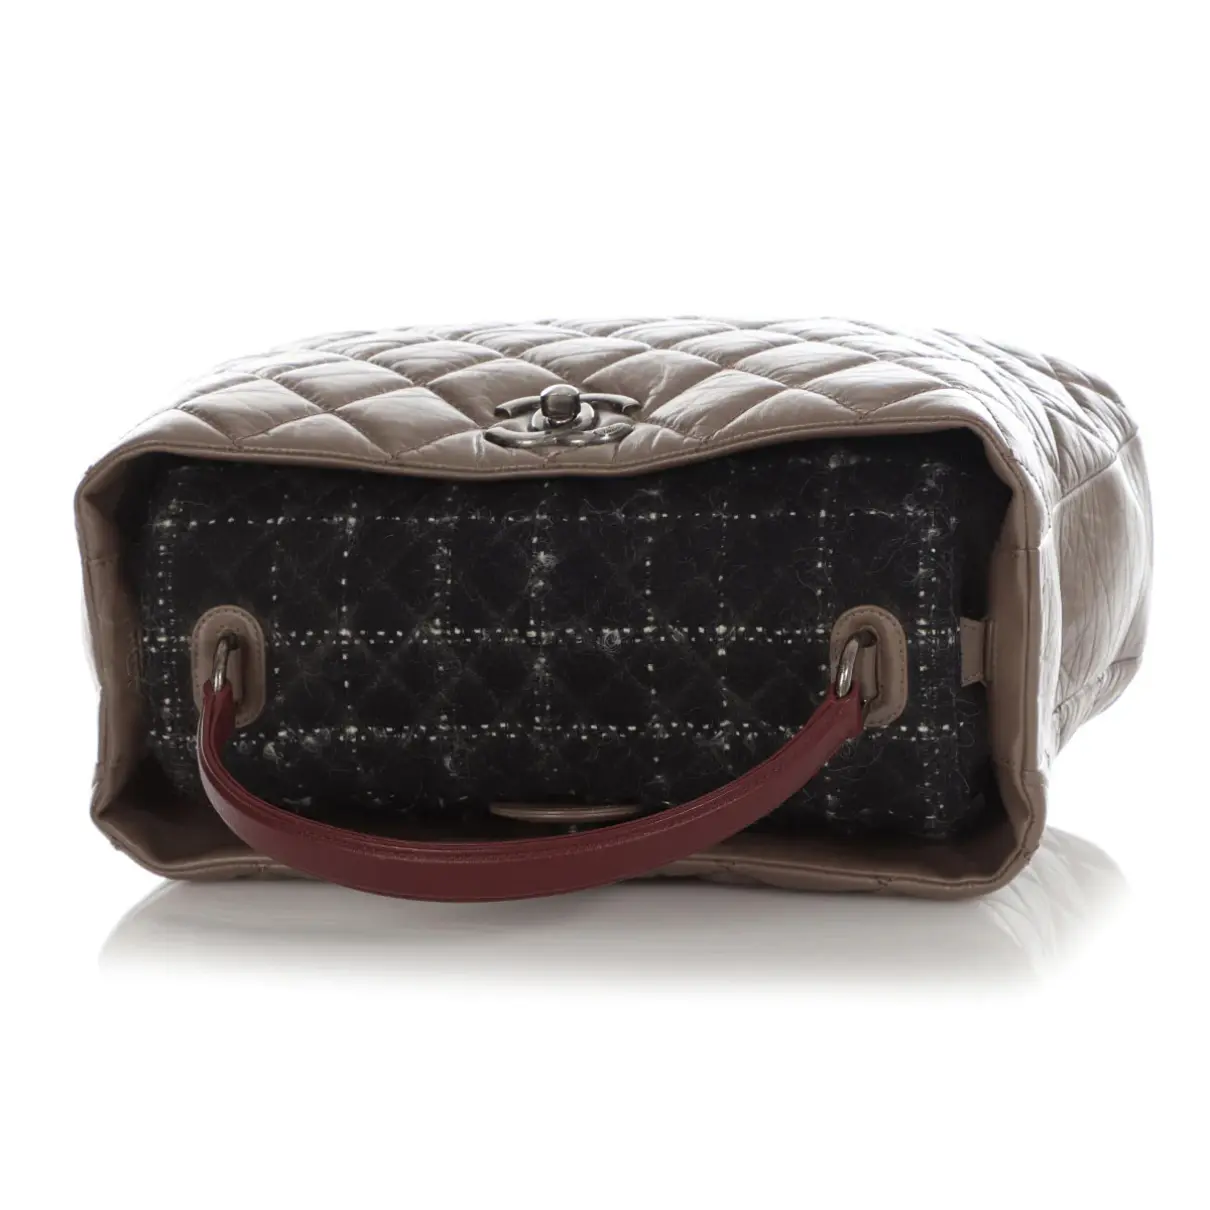 Portobello leather satchel Chanel